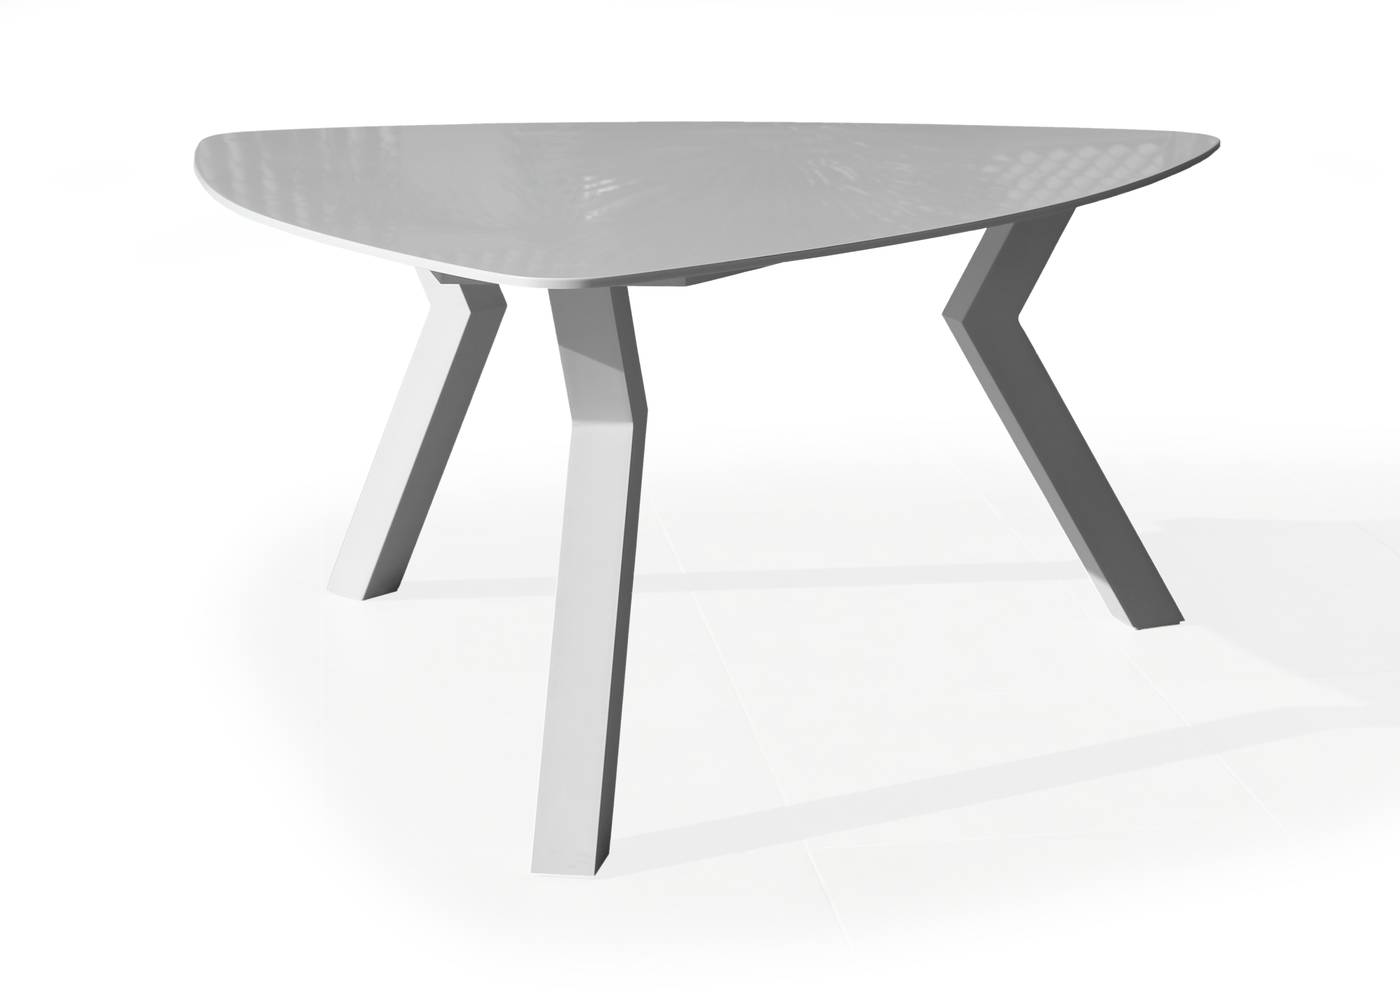 Mesa lujo triangular de 150 cm, con tablero de Krion de calidad superior. Estructura robusta de aluminio color blanco.